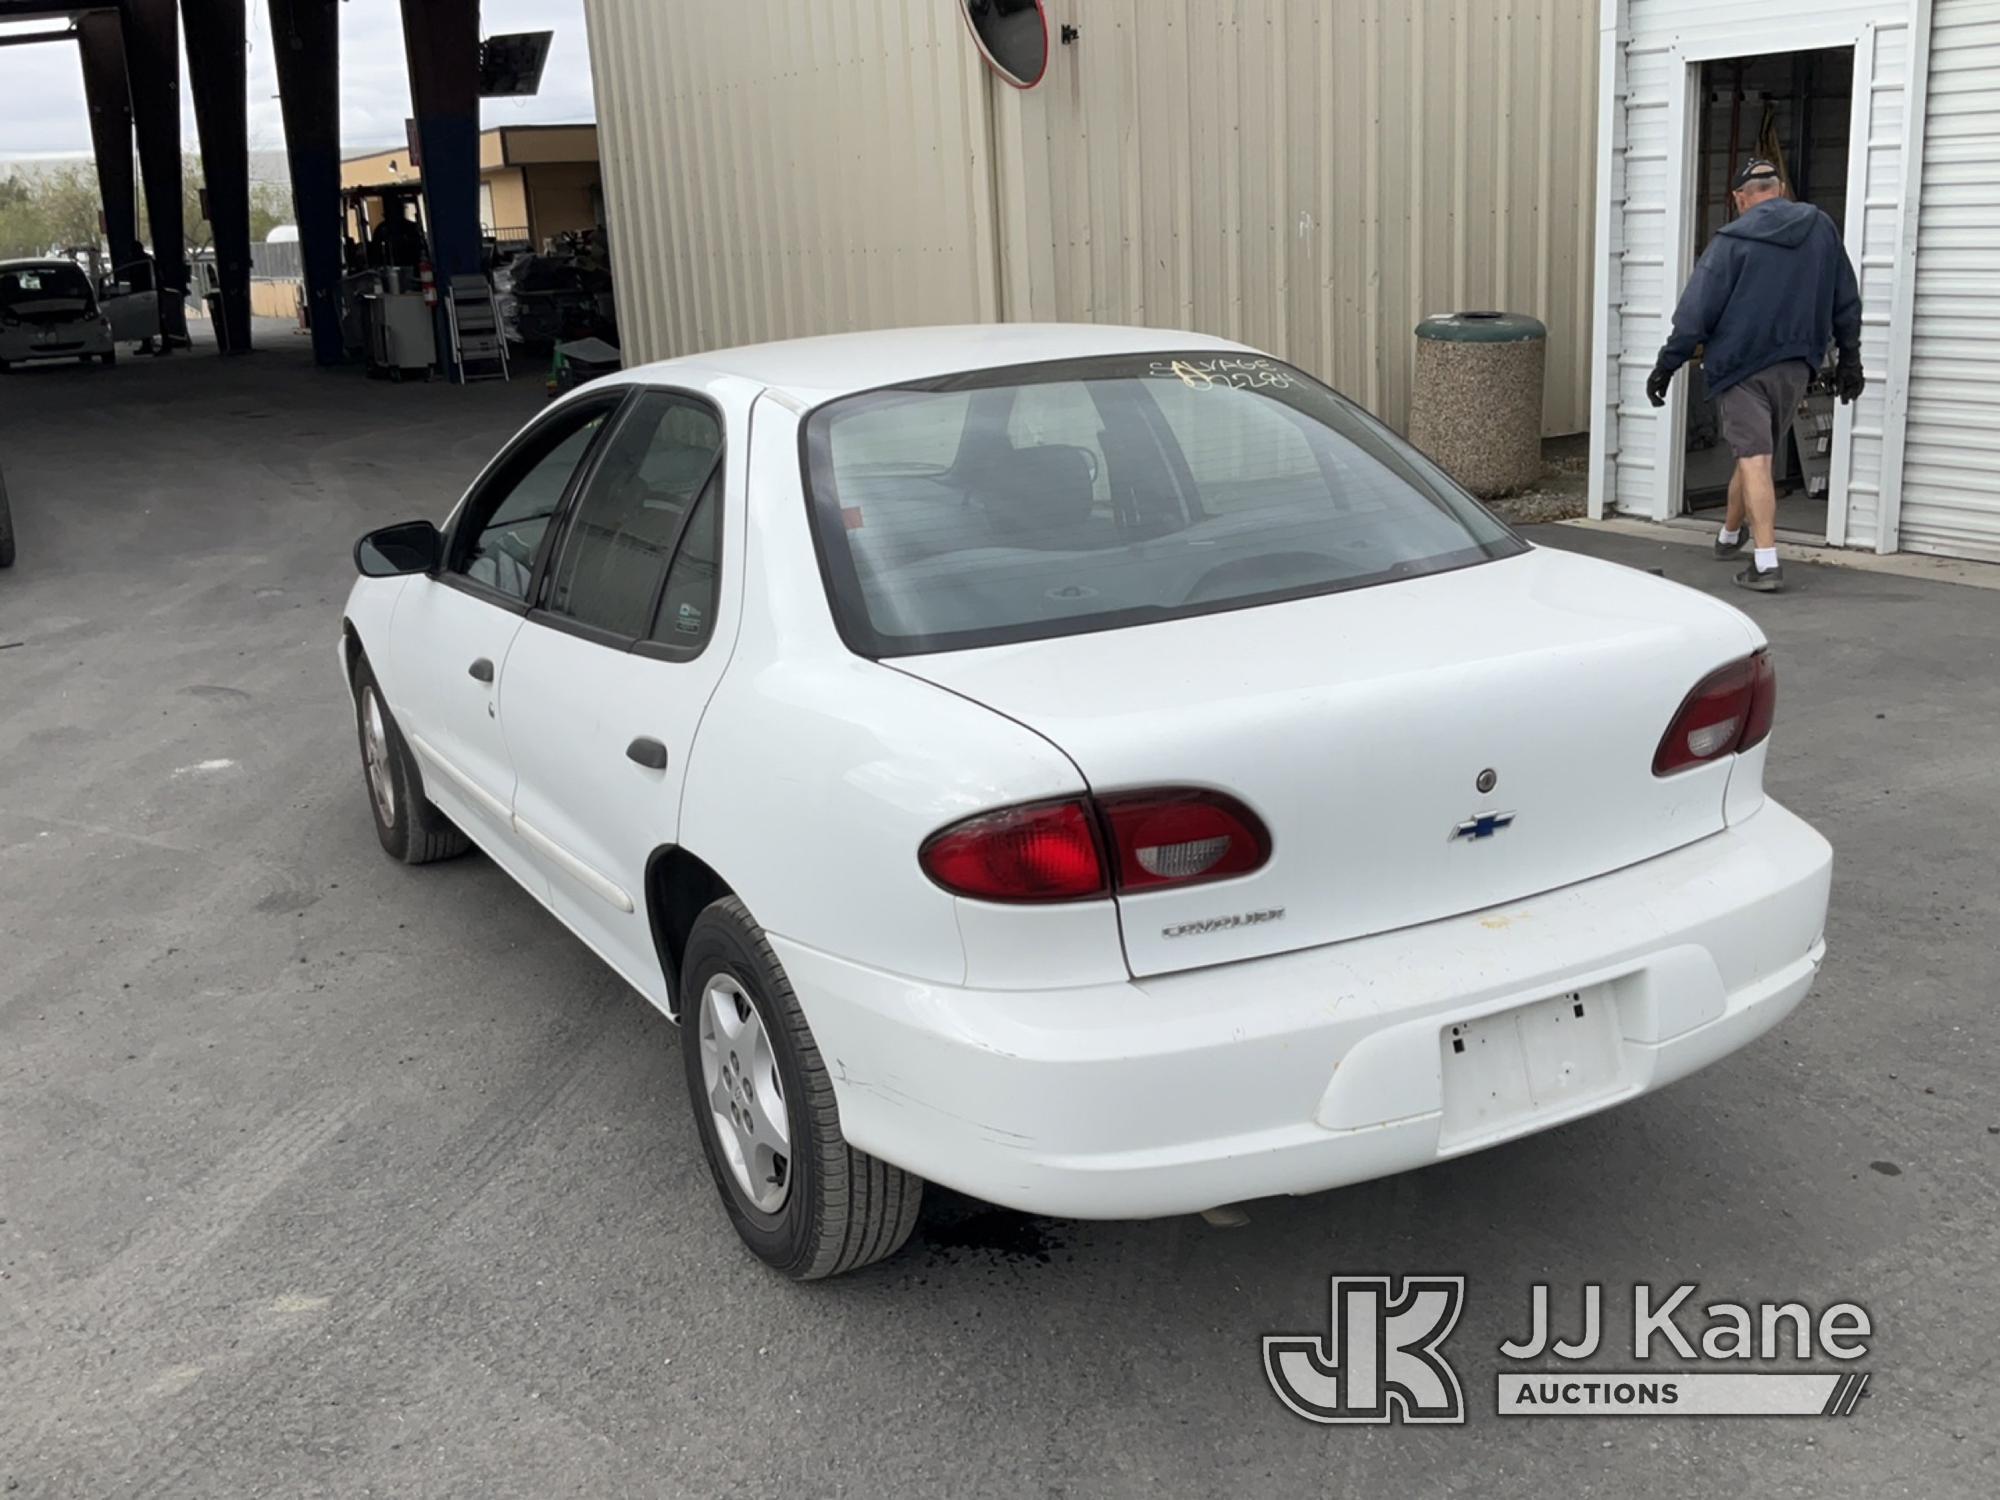 (Jurupa Valley, CA) 2001 Chevrolet Cavalier 4-Door Sedan Runs & Moves,